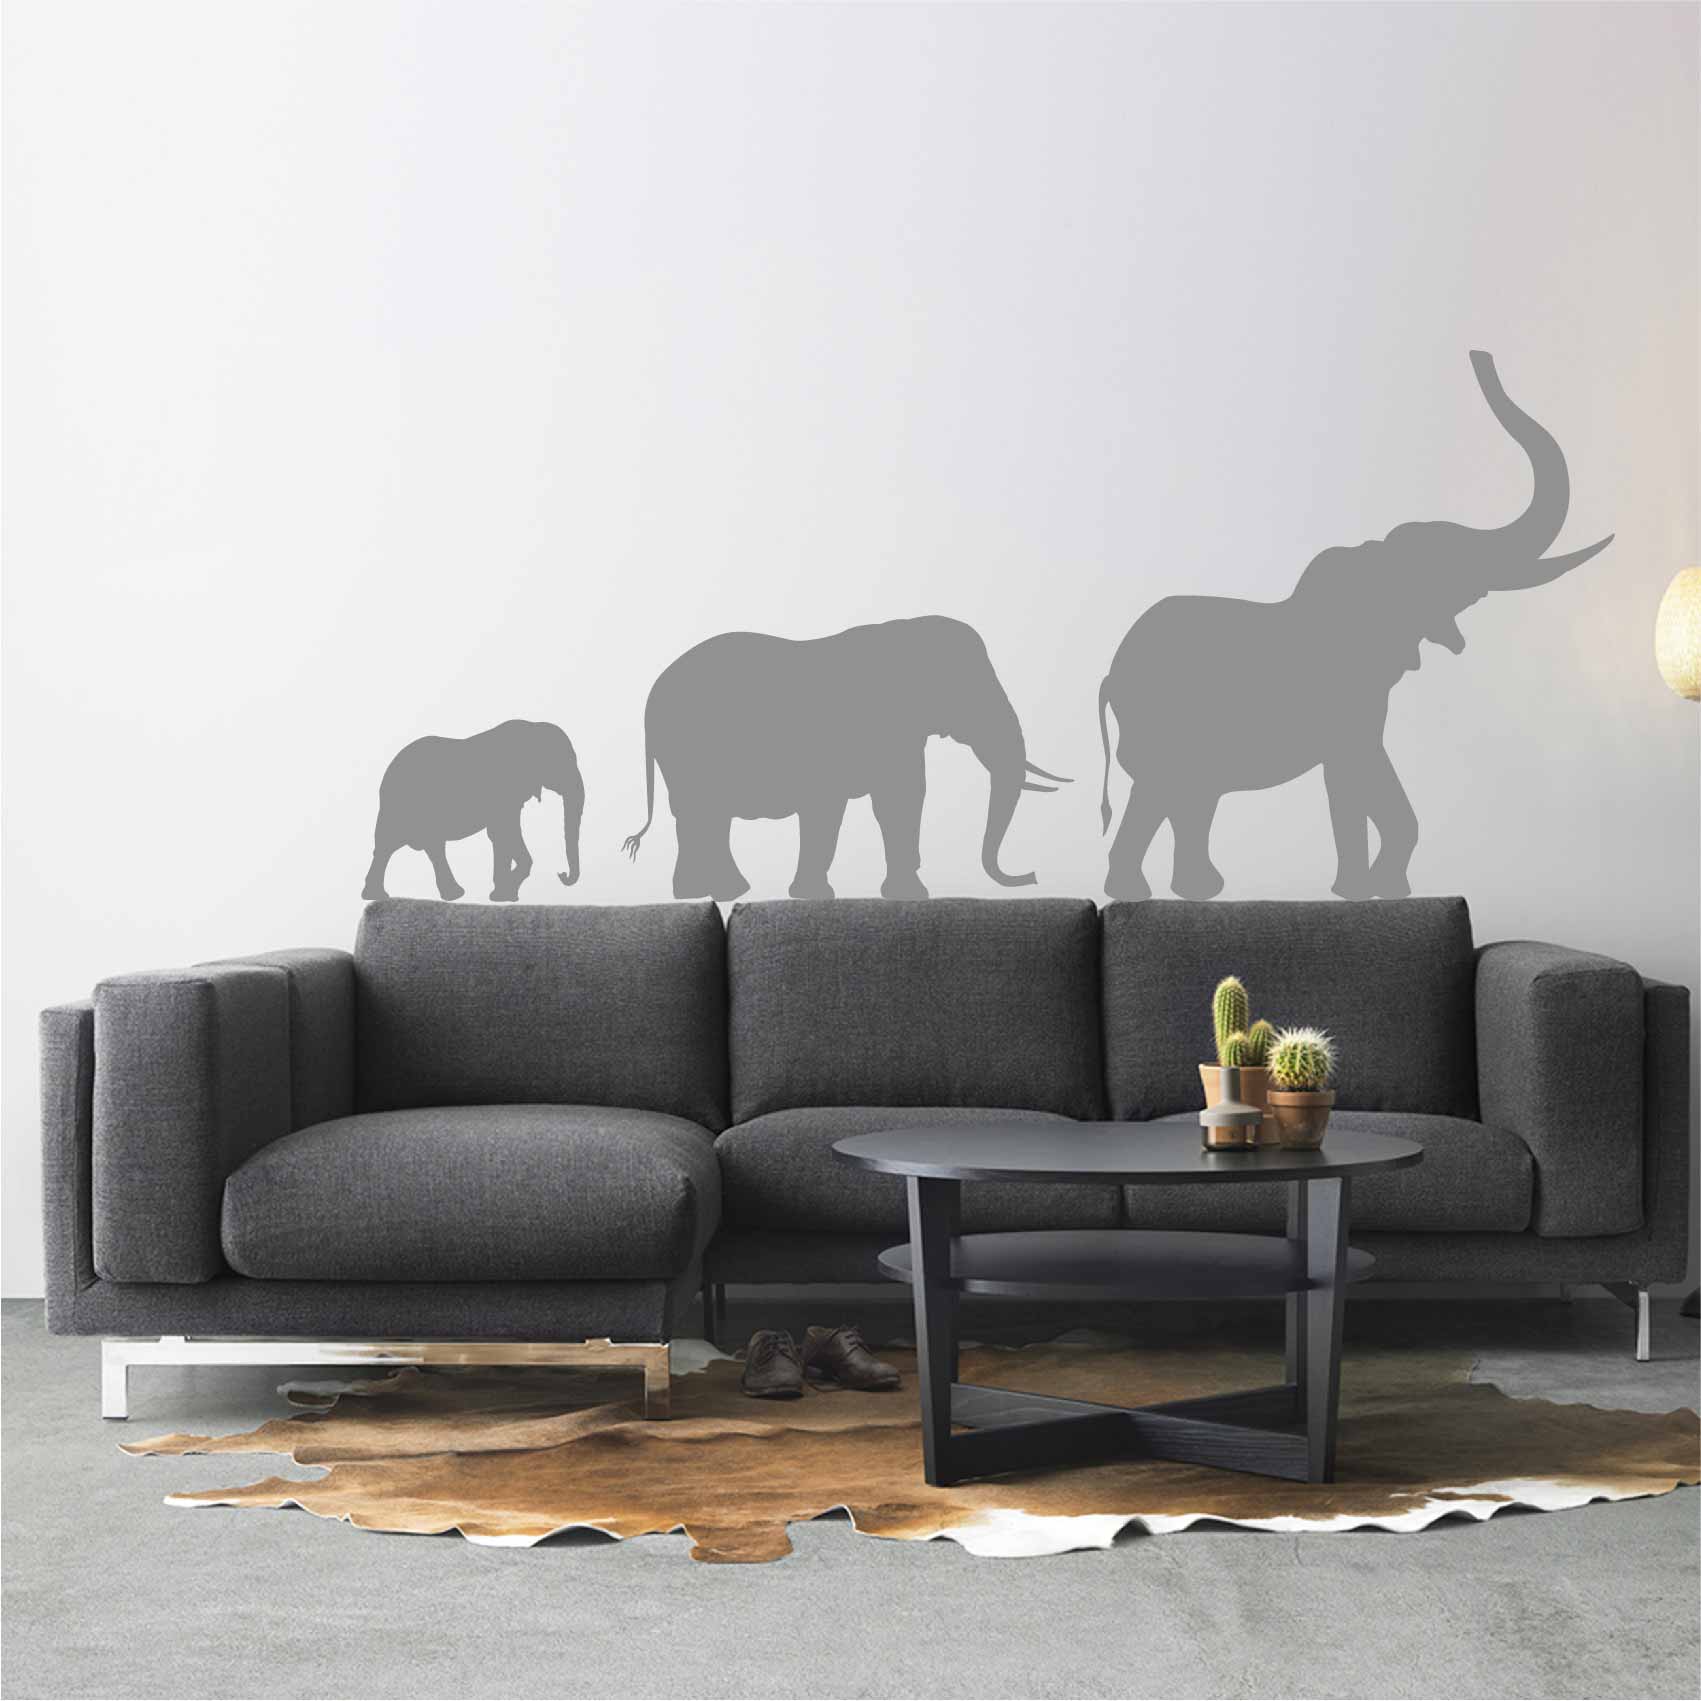 stickers-elephants-ref5elephant-stickers-muraux-elephant-autocollant-chambre-deco-sticker-mural-éléphant-enfant